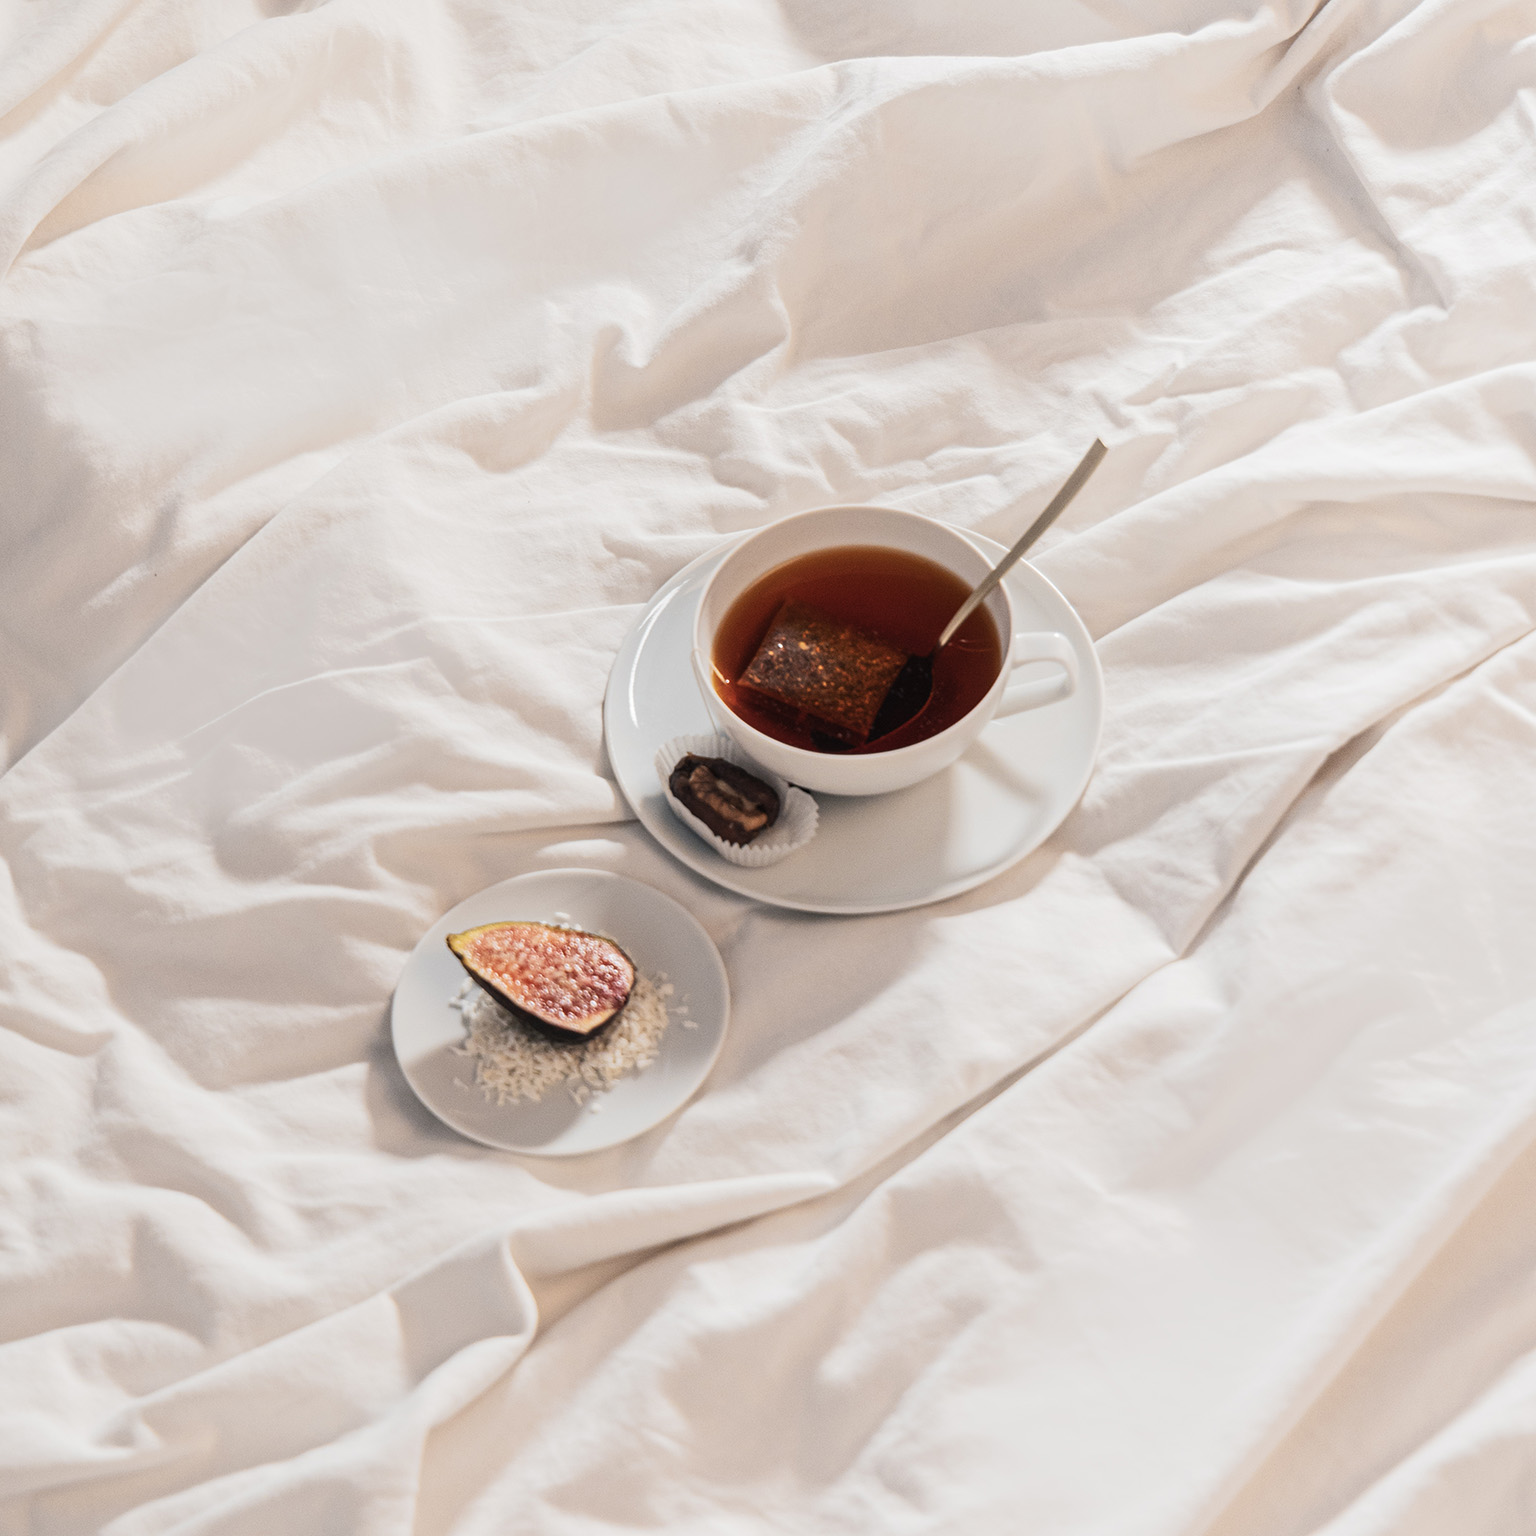 La tasse à thé TAC remplie de thé, la soucoupe et l'assiette à pain avec une figue sont posées sur un drap de lit.